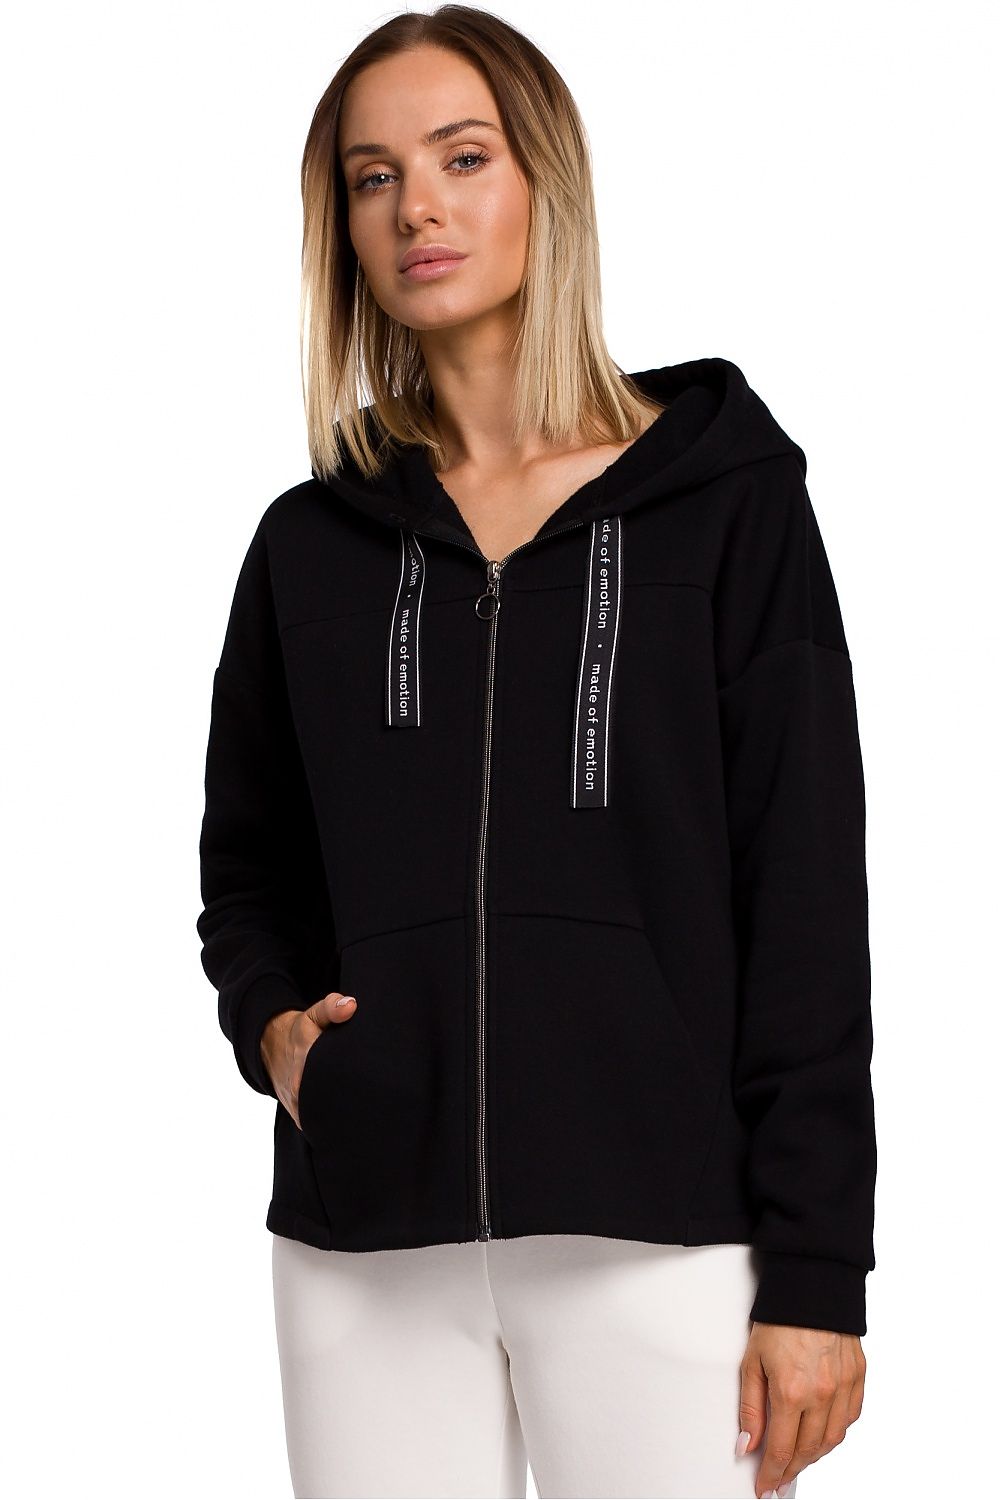 Black Oversized Hooded Sweatshirt with Zipper